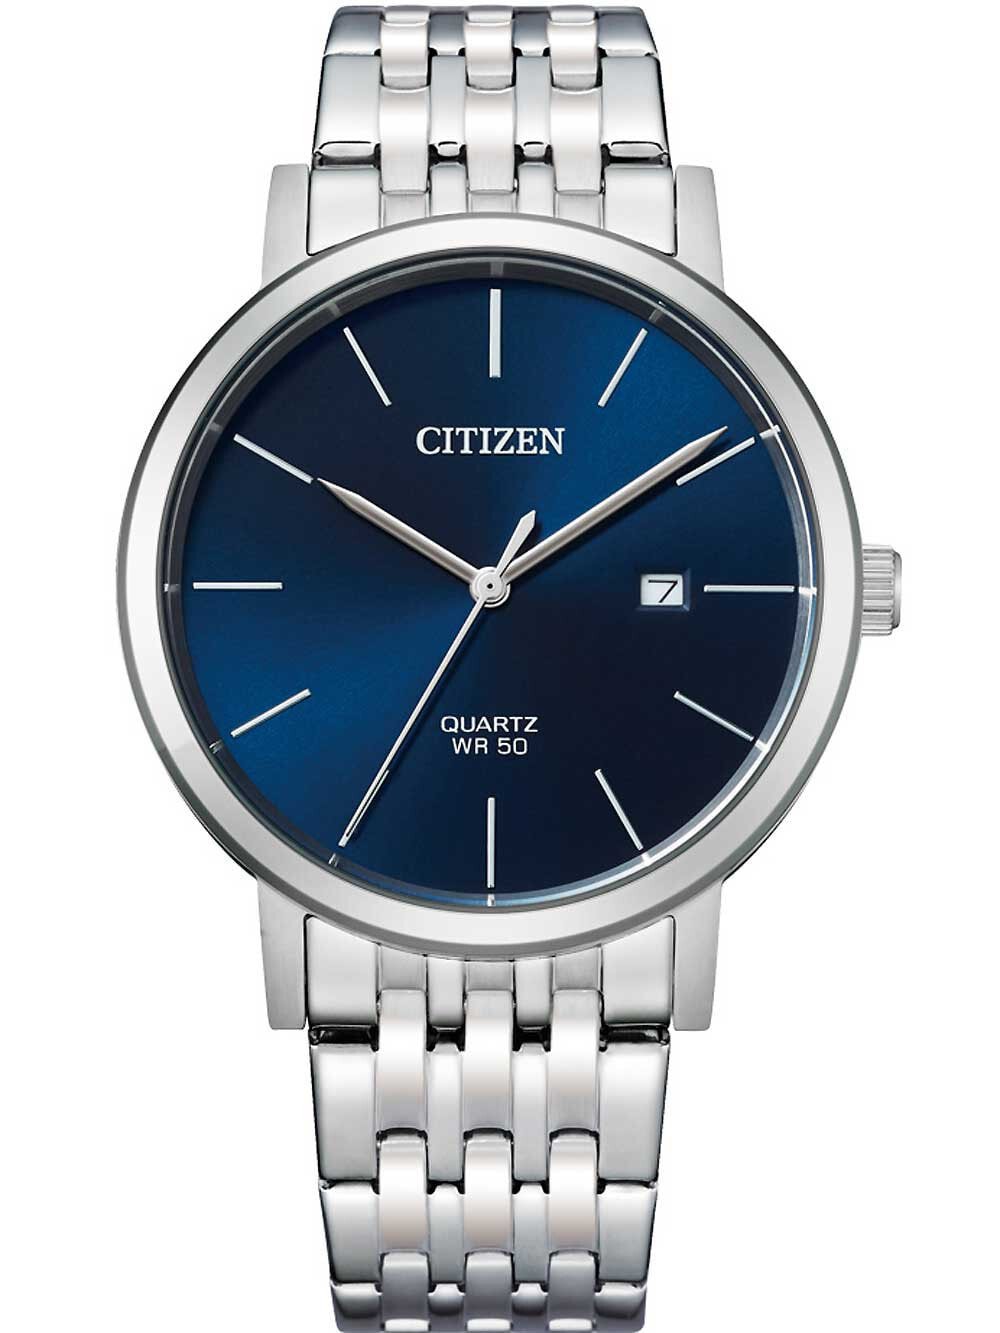 Мужские наручные часы с серебряным браслетом Citizen BI5070-57L Sport mens quartz 40mm 5ATM